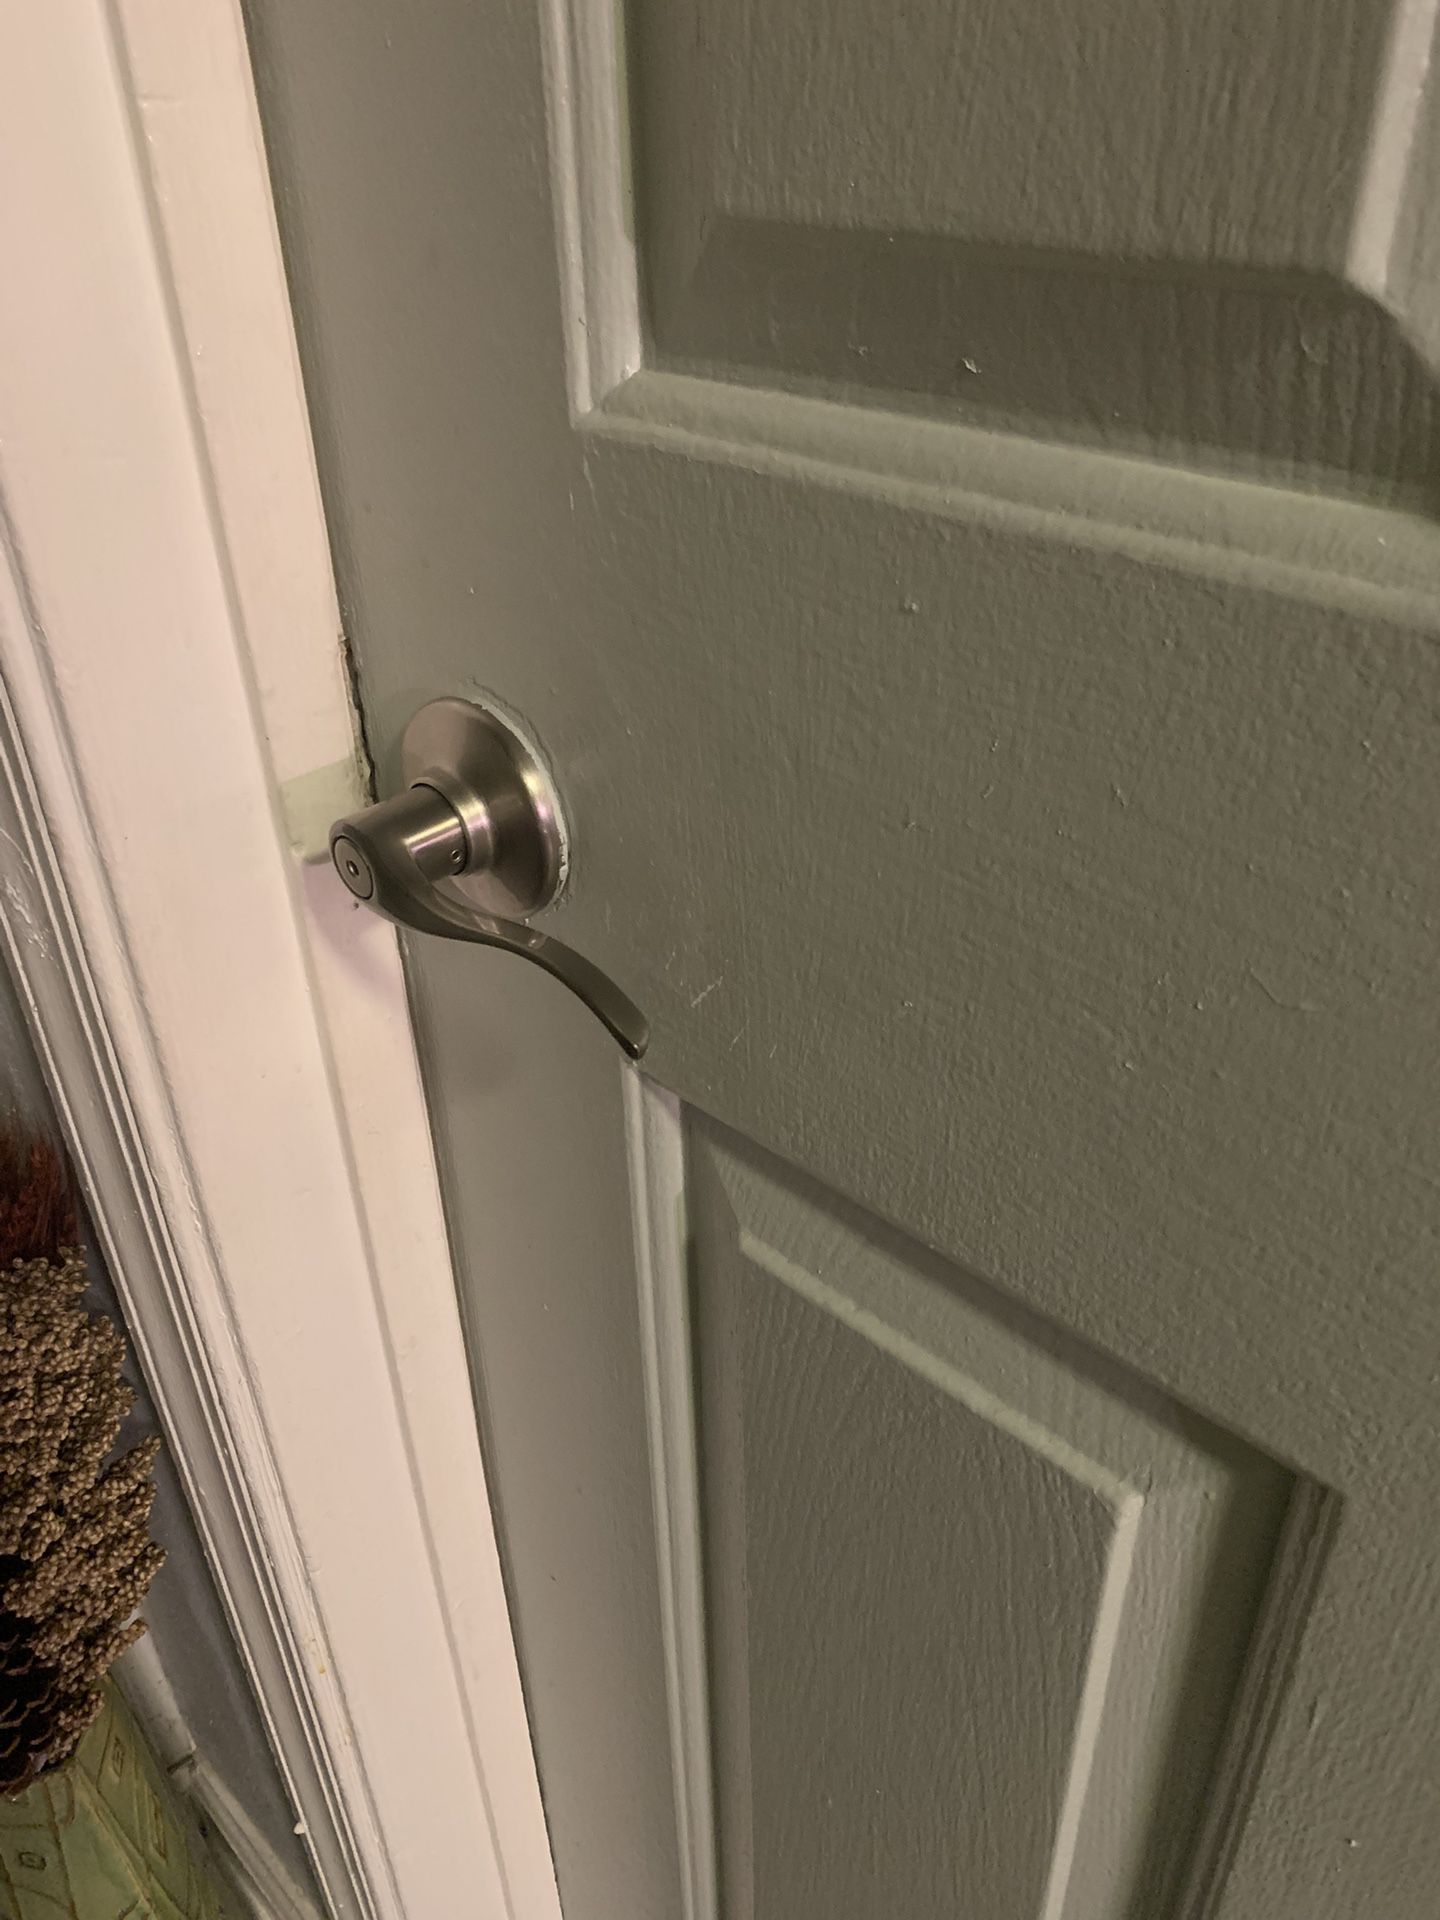 Satin Nickel Bed/Bathroom passageway door handles.  Complete Set of 8 purchased from LOWES